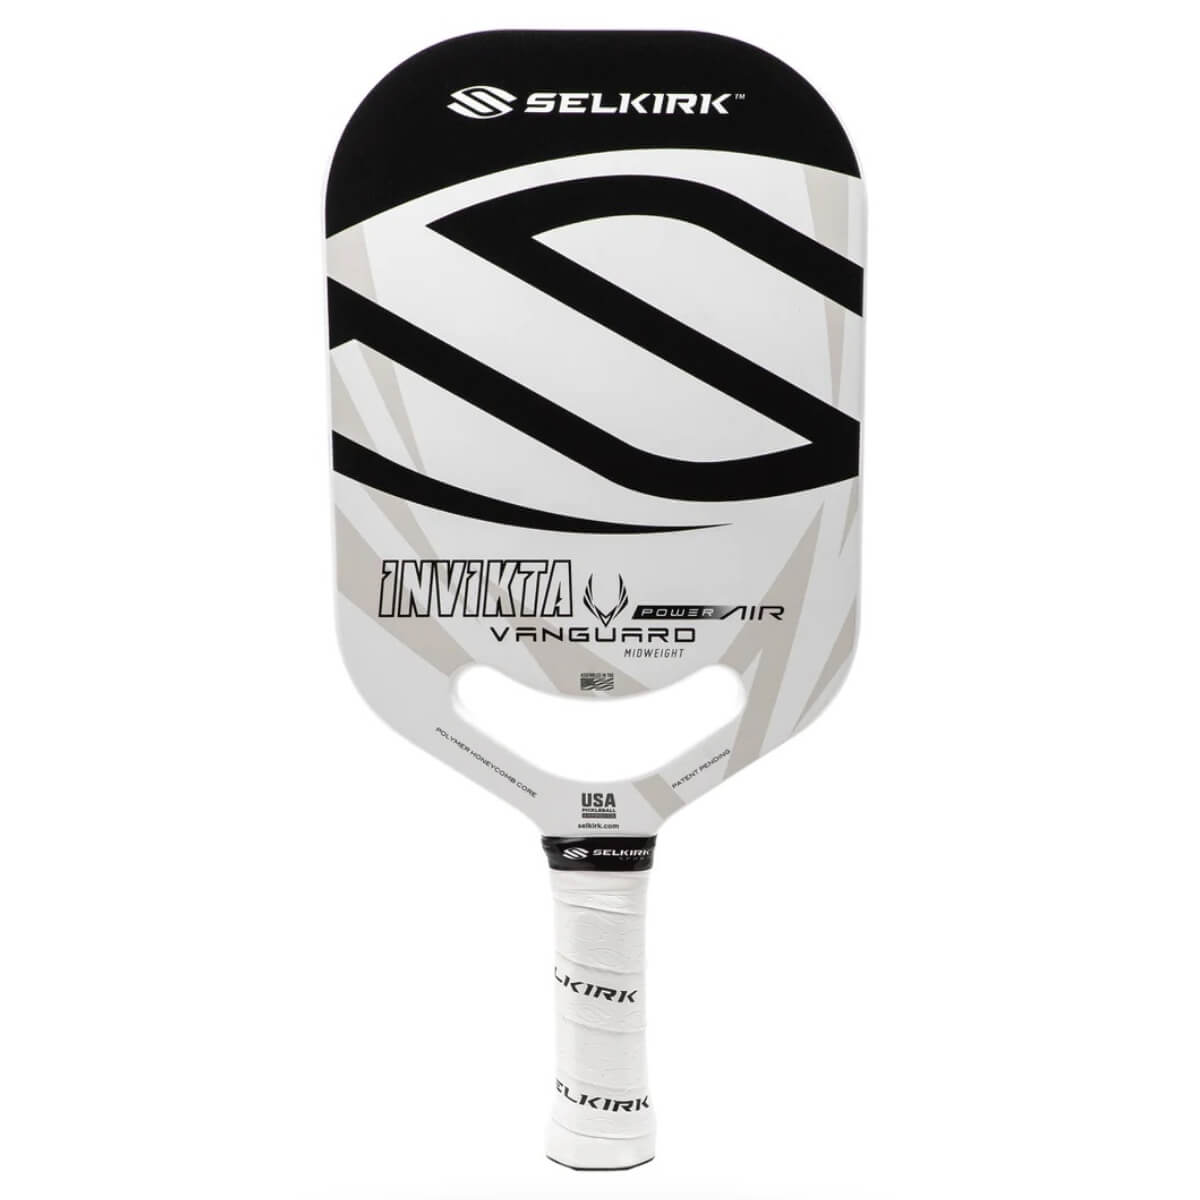 Selkirk Vanguard Power Air Invikta paddle / racket Black